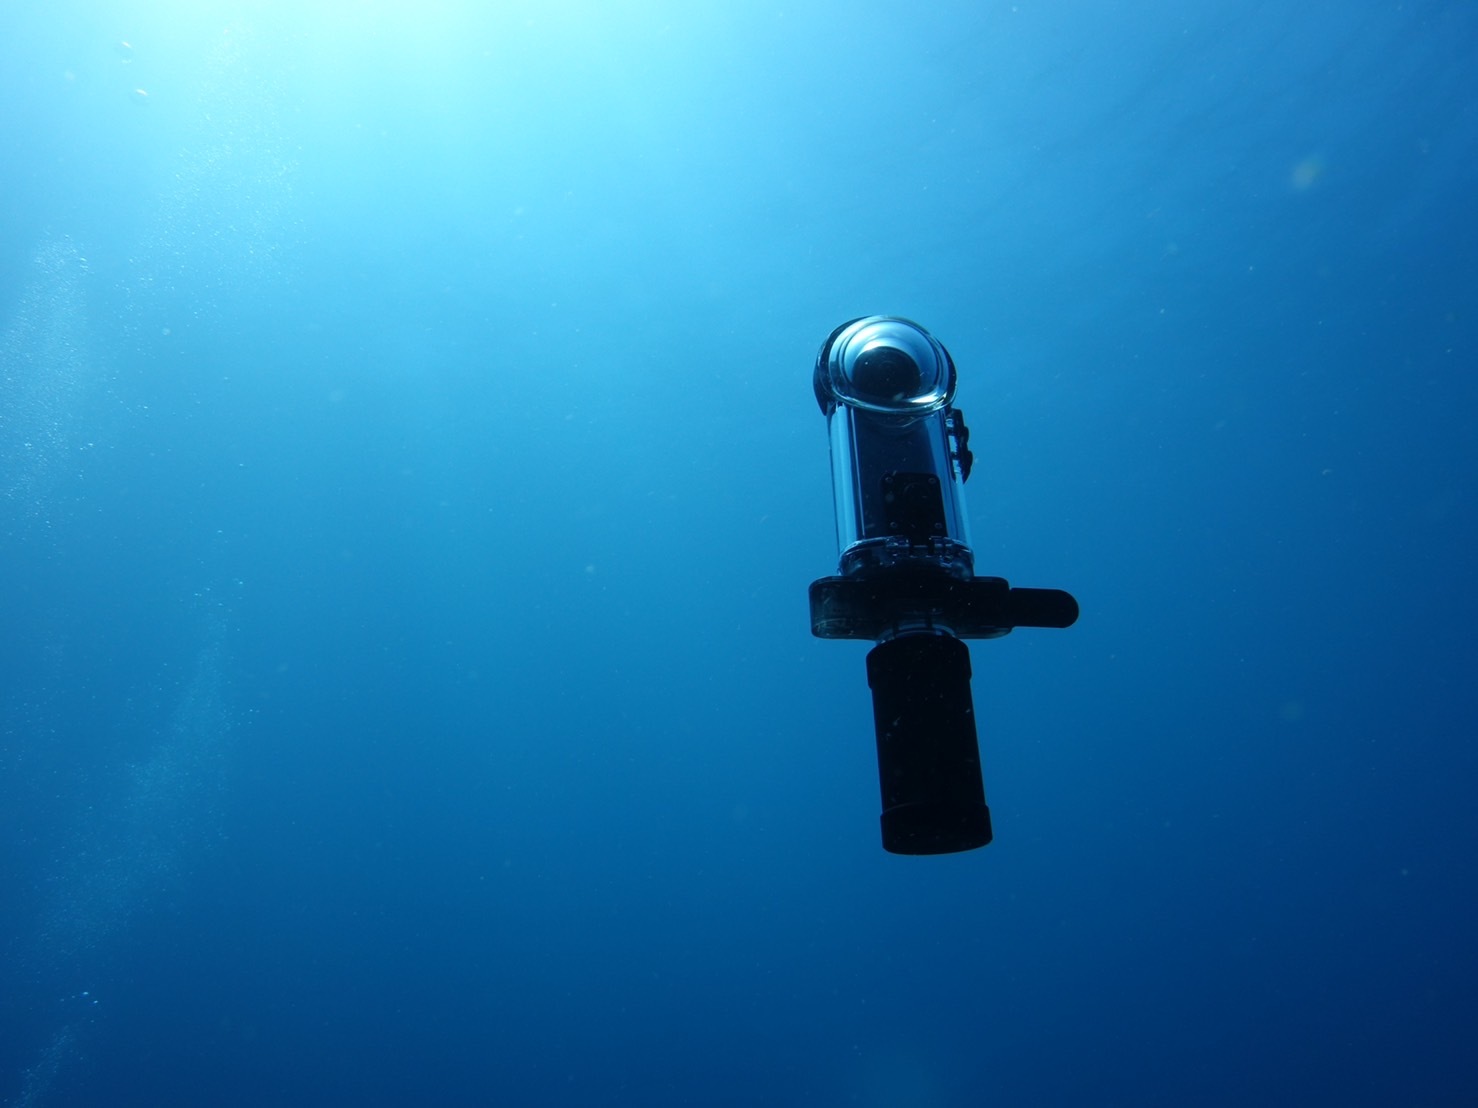 リコー 水中で浮く360度カメラ向け浮力調整器 Staythee 魚の浮袋の原理にヒント Cnet Japan